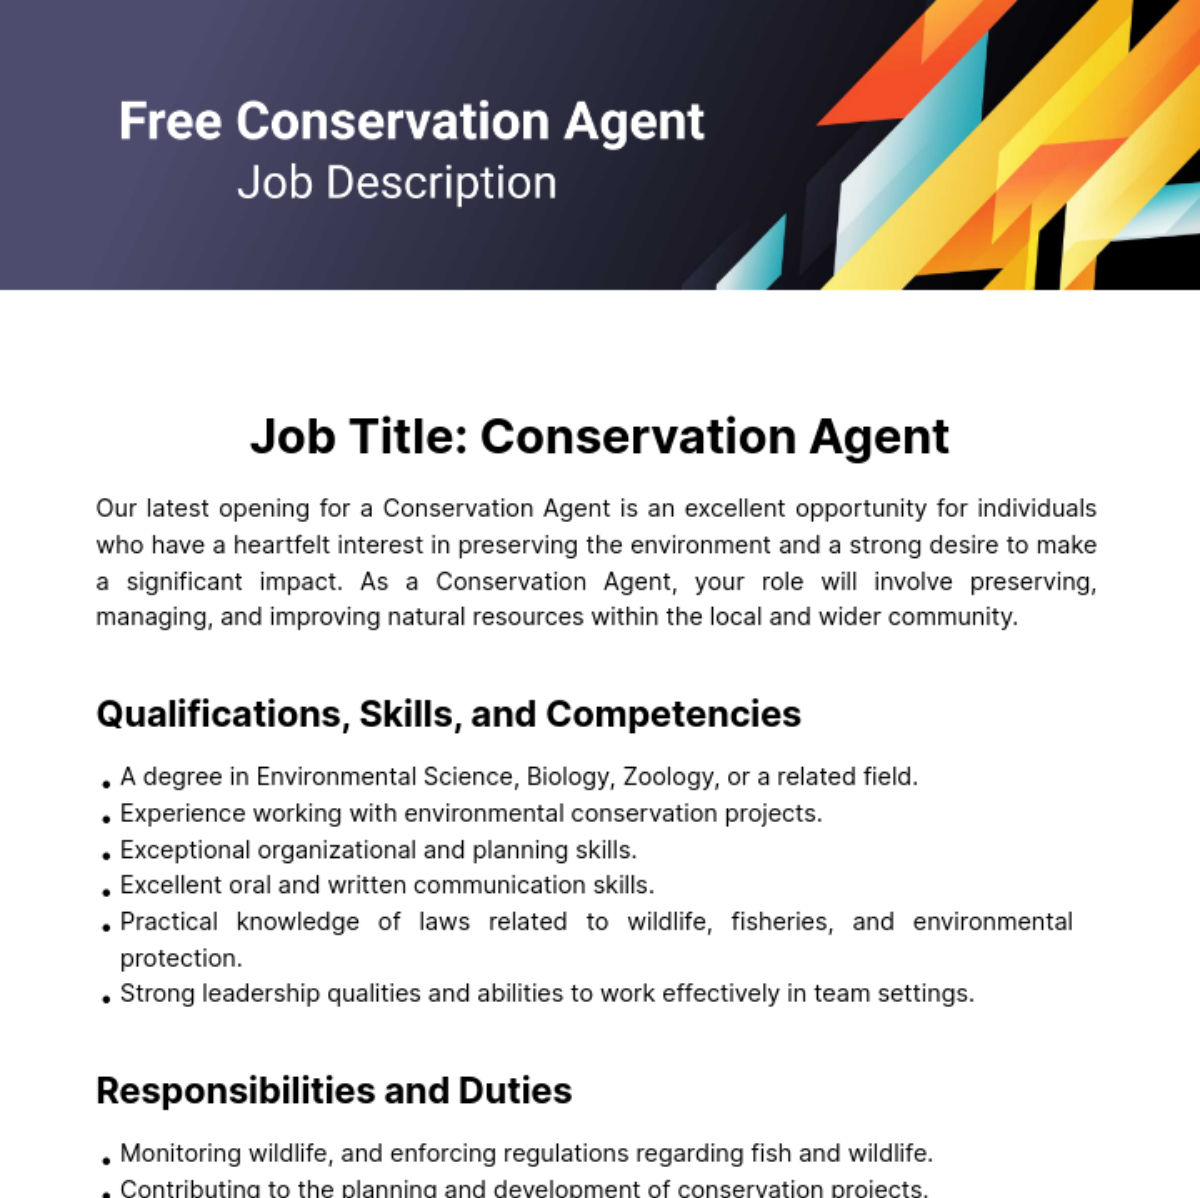 Free Conservation Agent Job Description Template